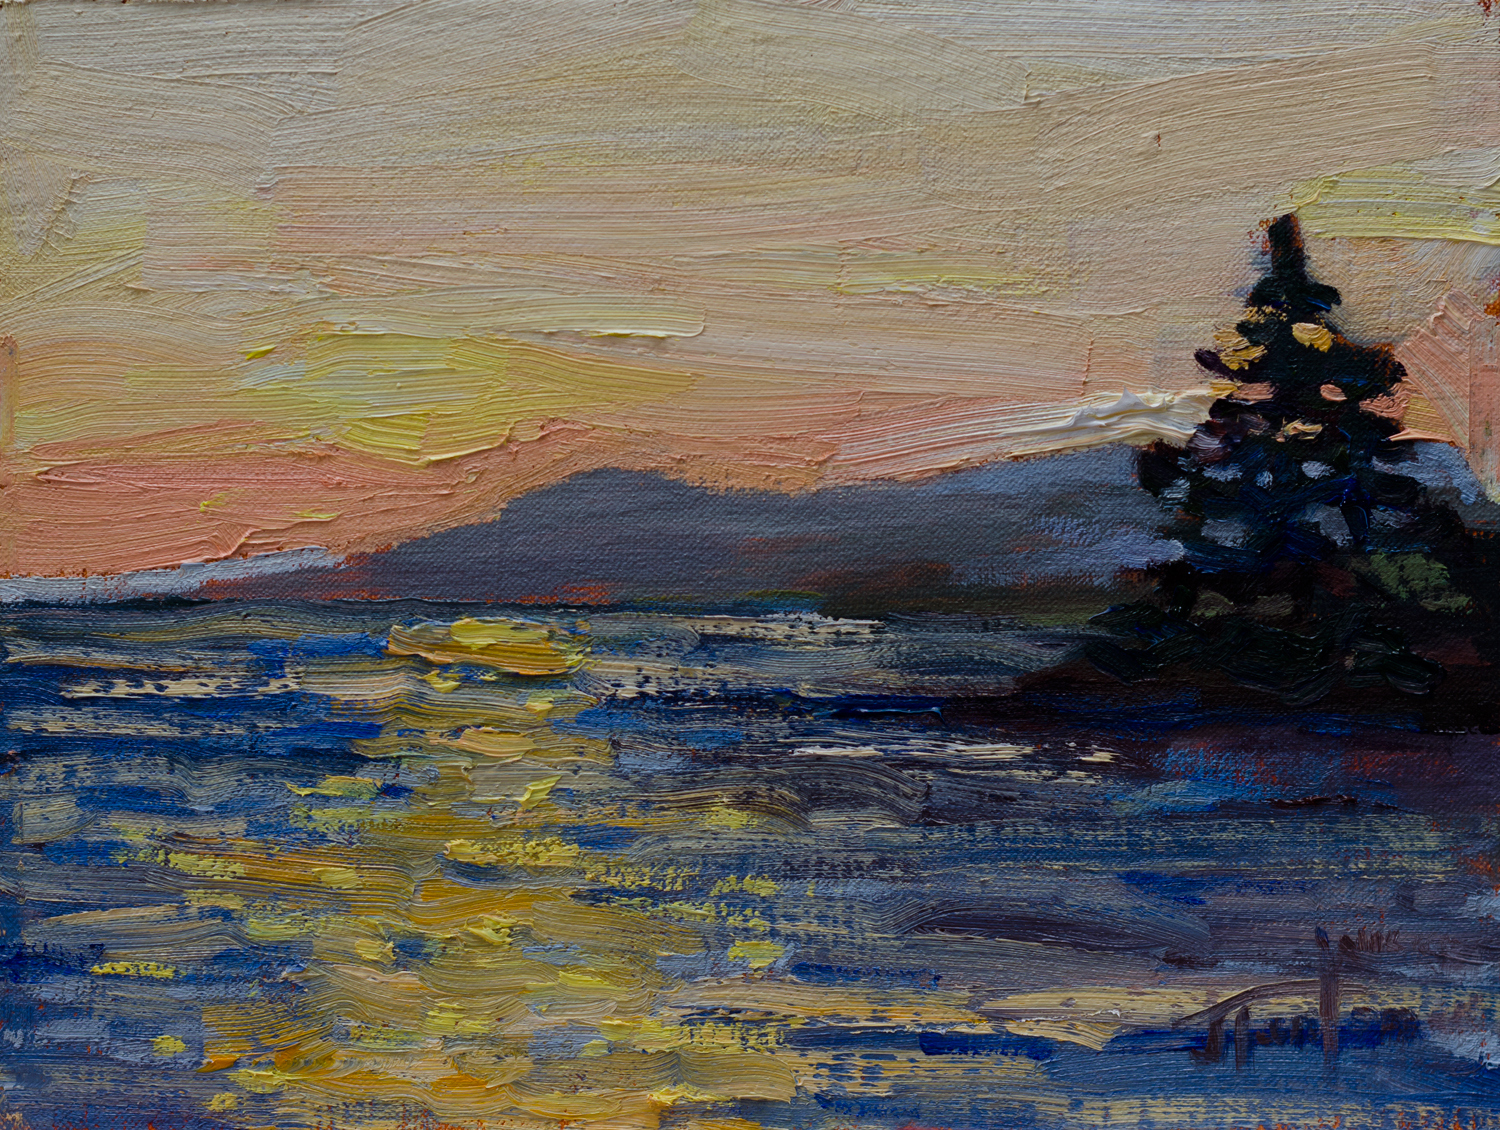 Sunset at Roberts Creek #3. ©Janice Tanton 2016. Oil on linen panel, 6x8.